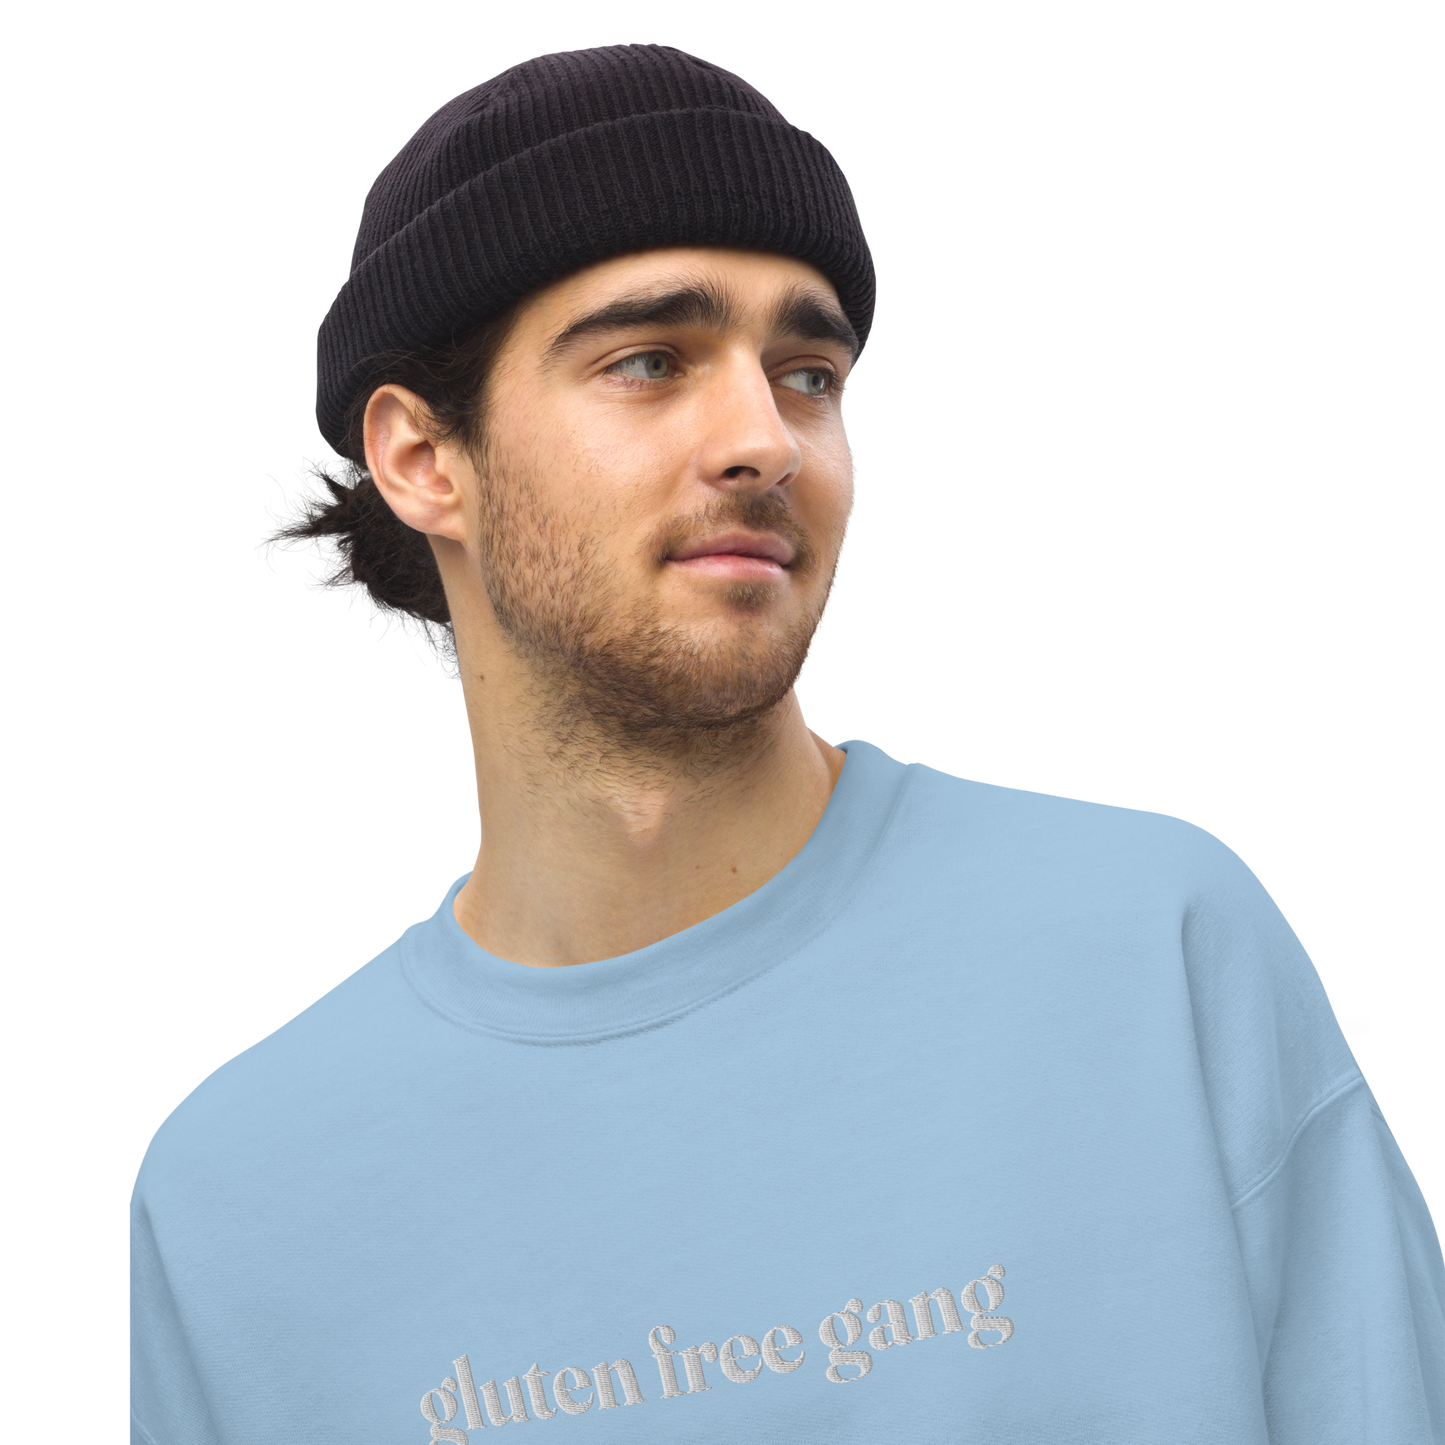 Gluten Free Gang Embroidered Unisex Sweatshirt